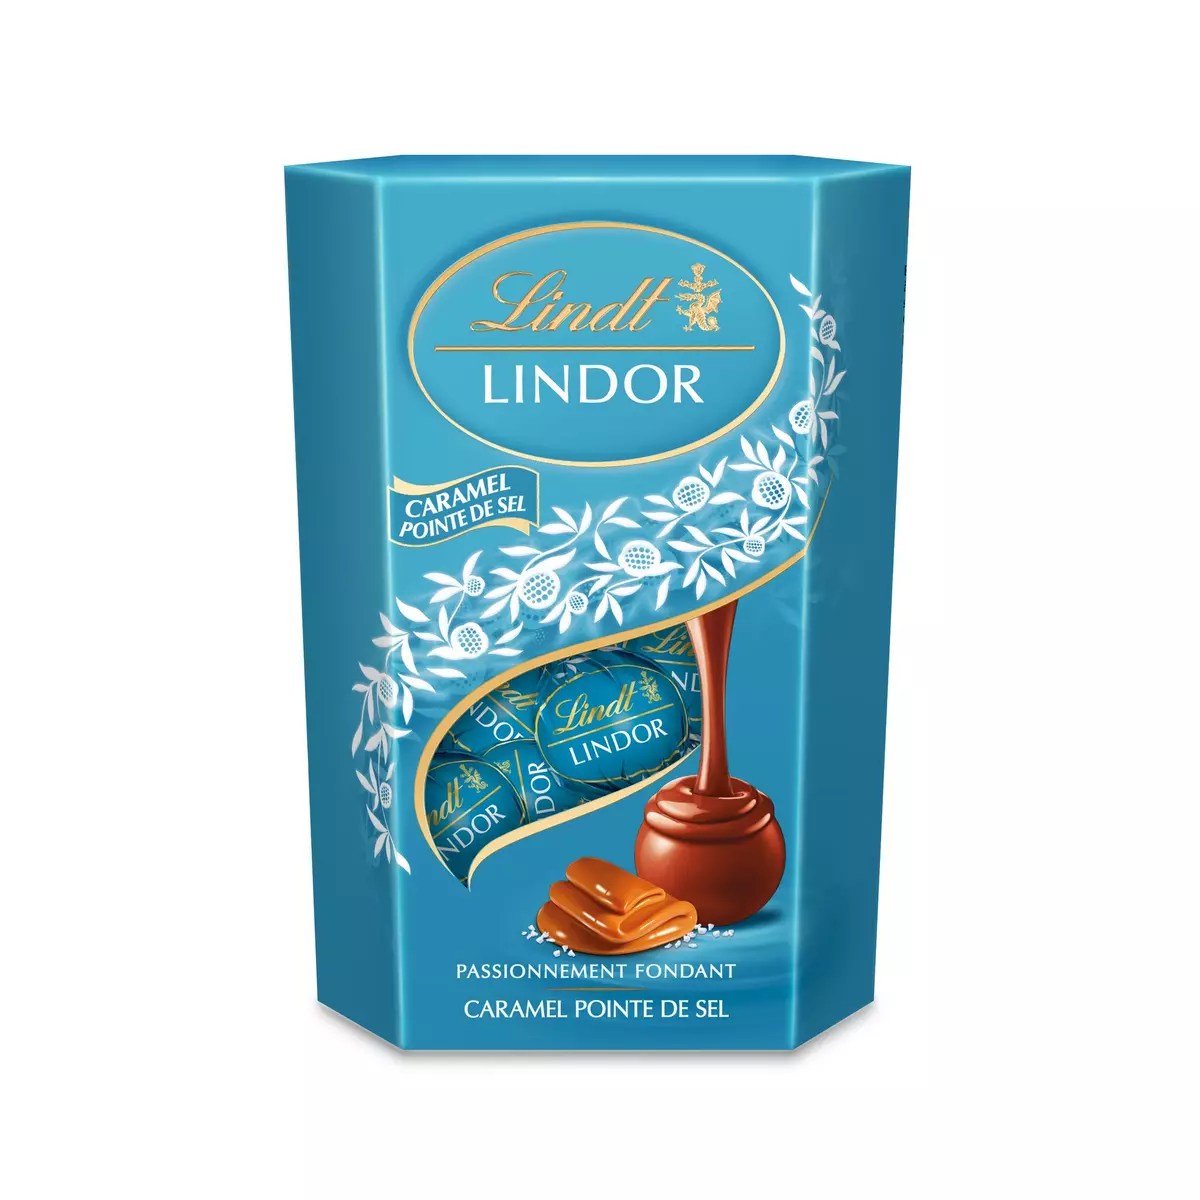 LINDT Lindor bouchées de chocolat au lait et caramel pointe de sel 200g